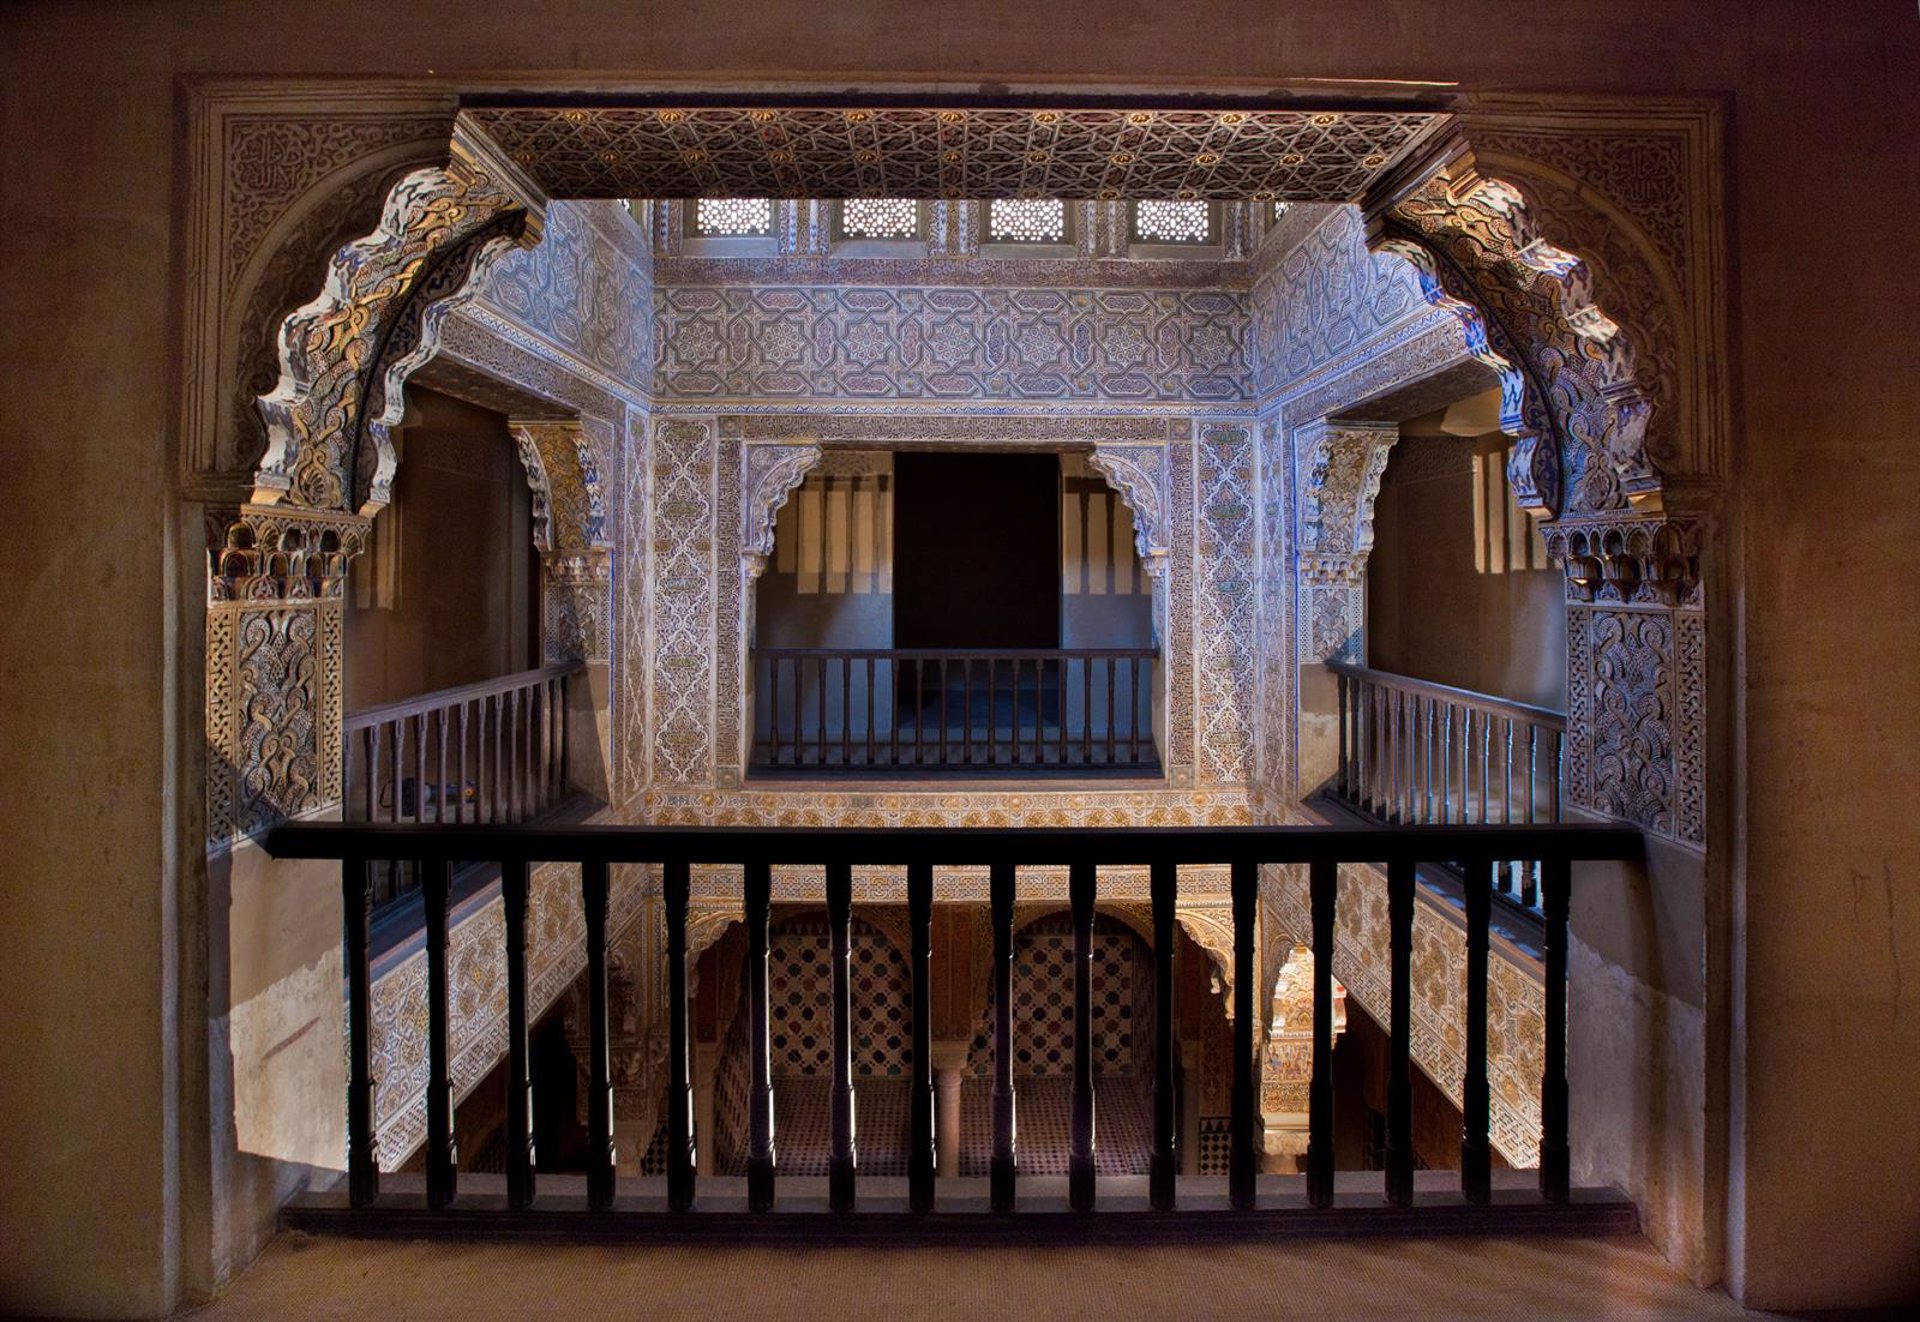 La mascarilla seguirá siendo obligatoria en los Palacios Nazaríes de la Alhambra desde este sábado